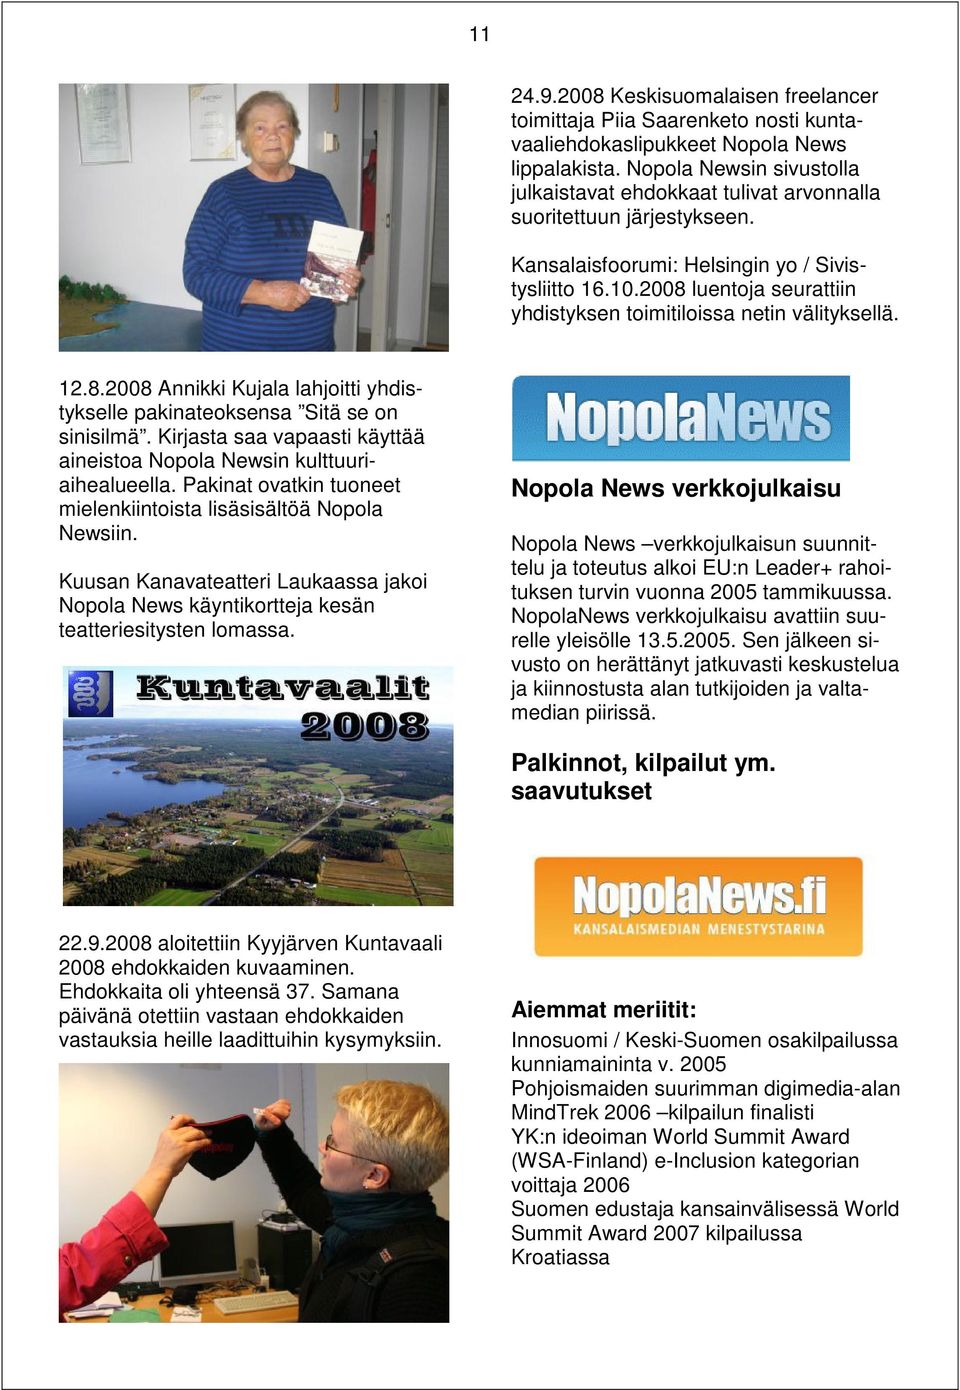 2008 luentoja seurattiin yhdistyksen toimitiloissa netin välityksellä. 12.8.2008 Annikki Kujala lahjoitti yhdistykselle pakinateoksensa Sitä se on sinisilmä.